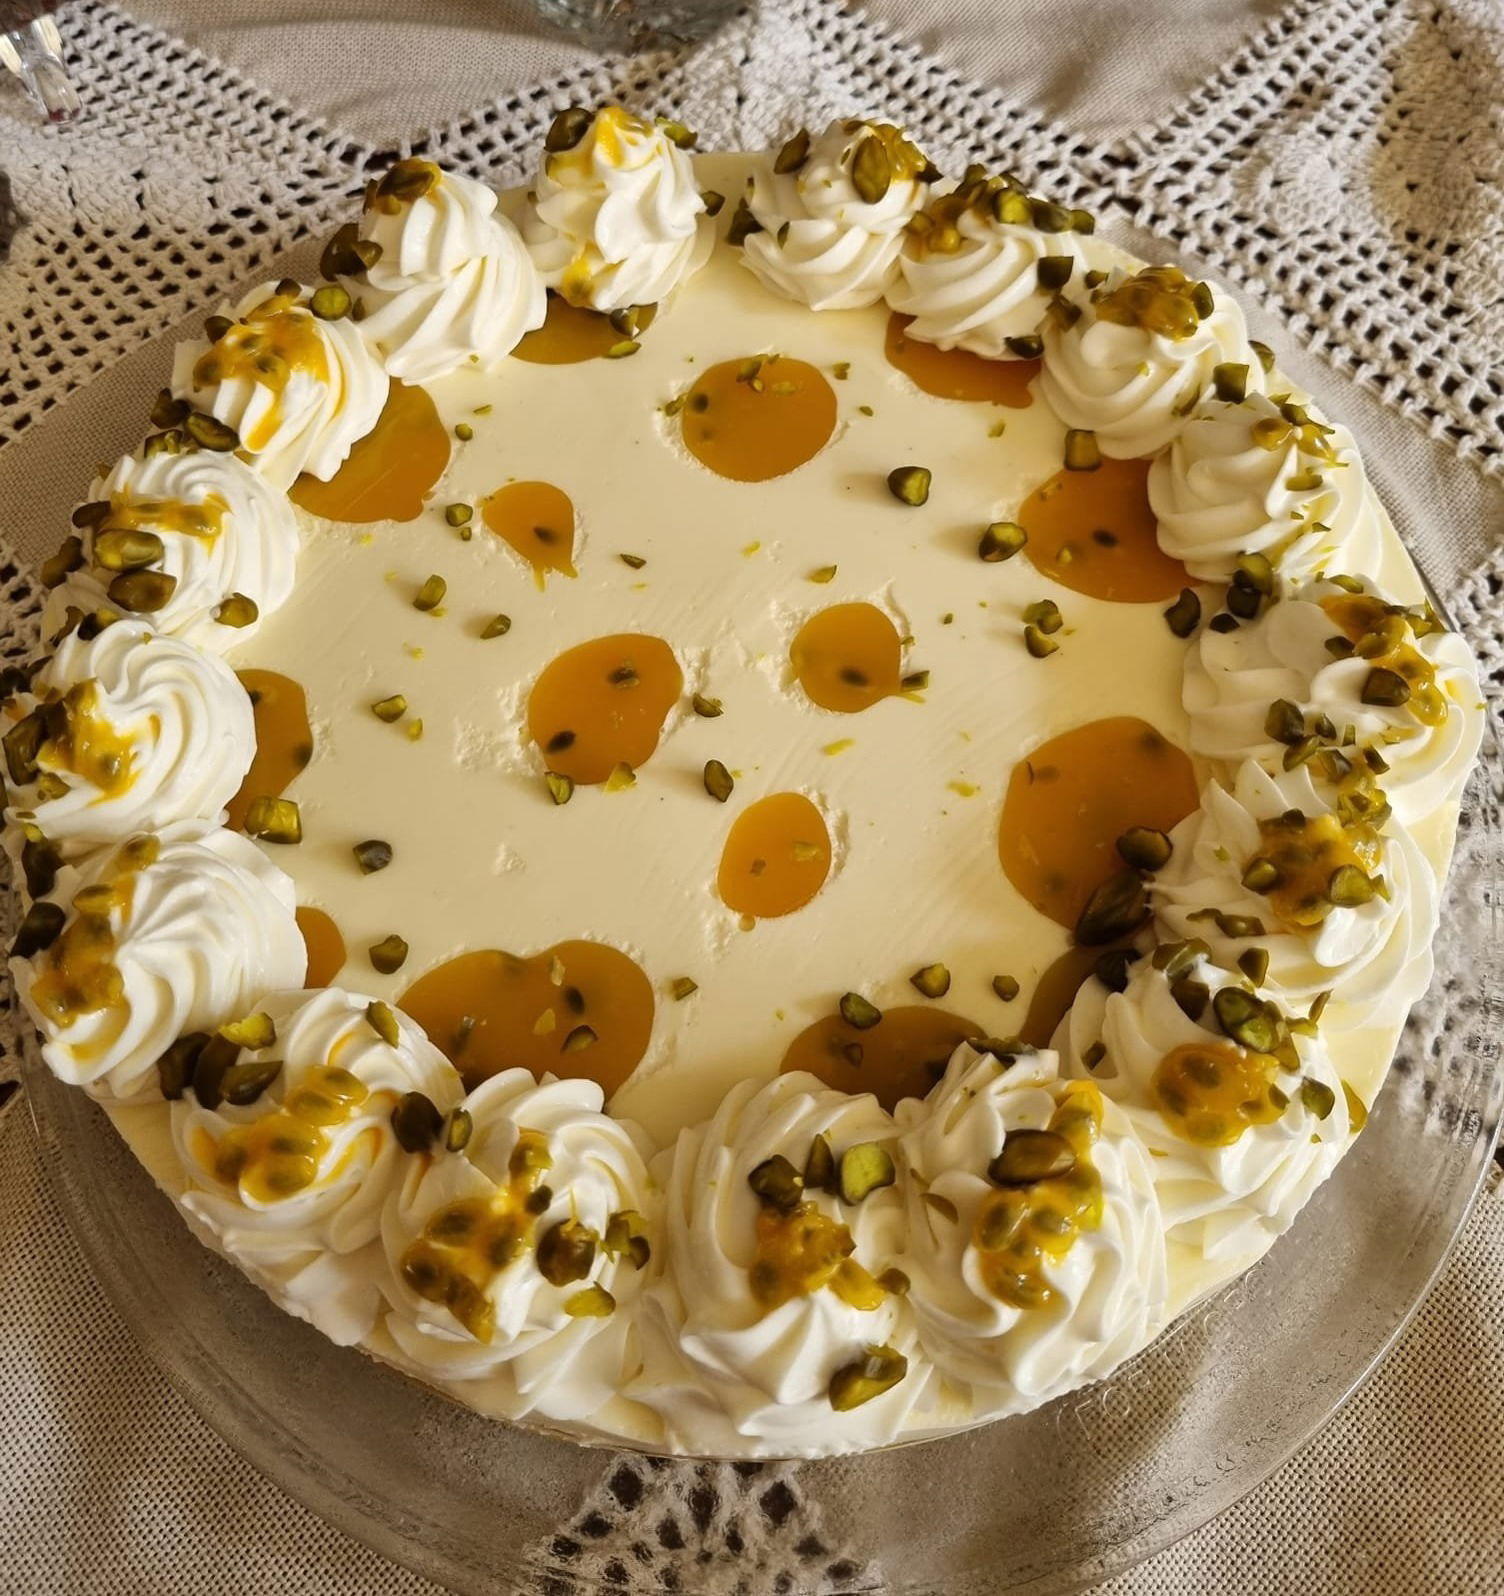 Narancsos maracuja torta vaníliás fehércsokival, pisztáciával